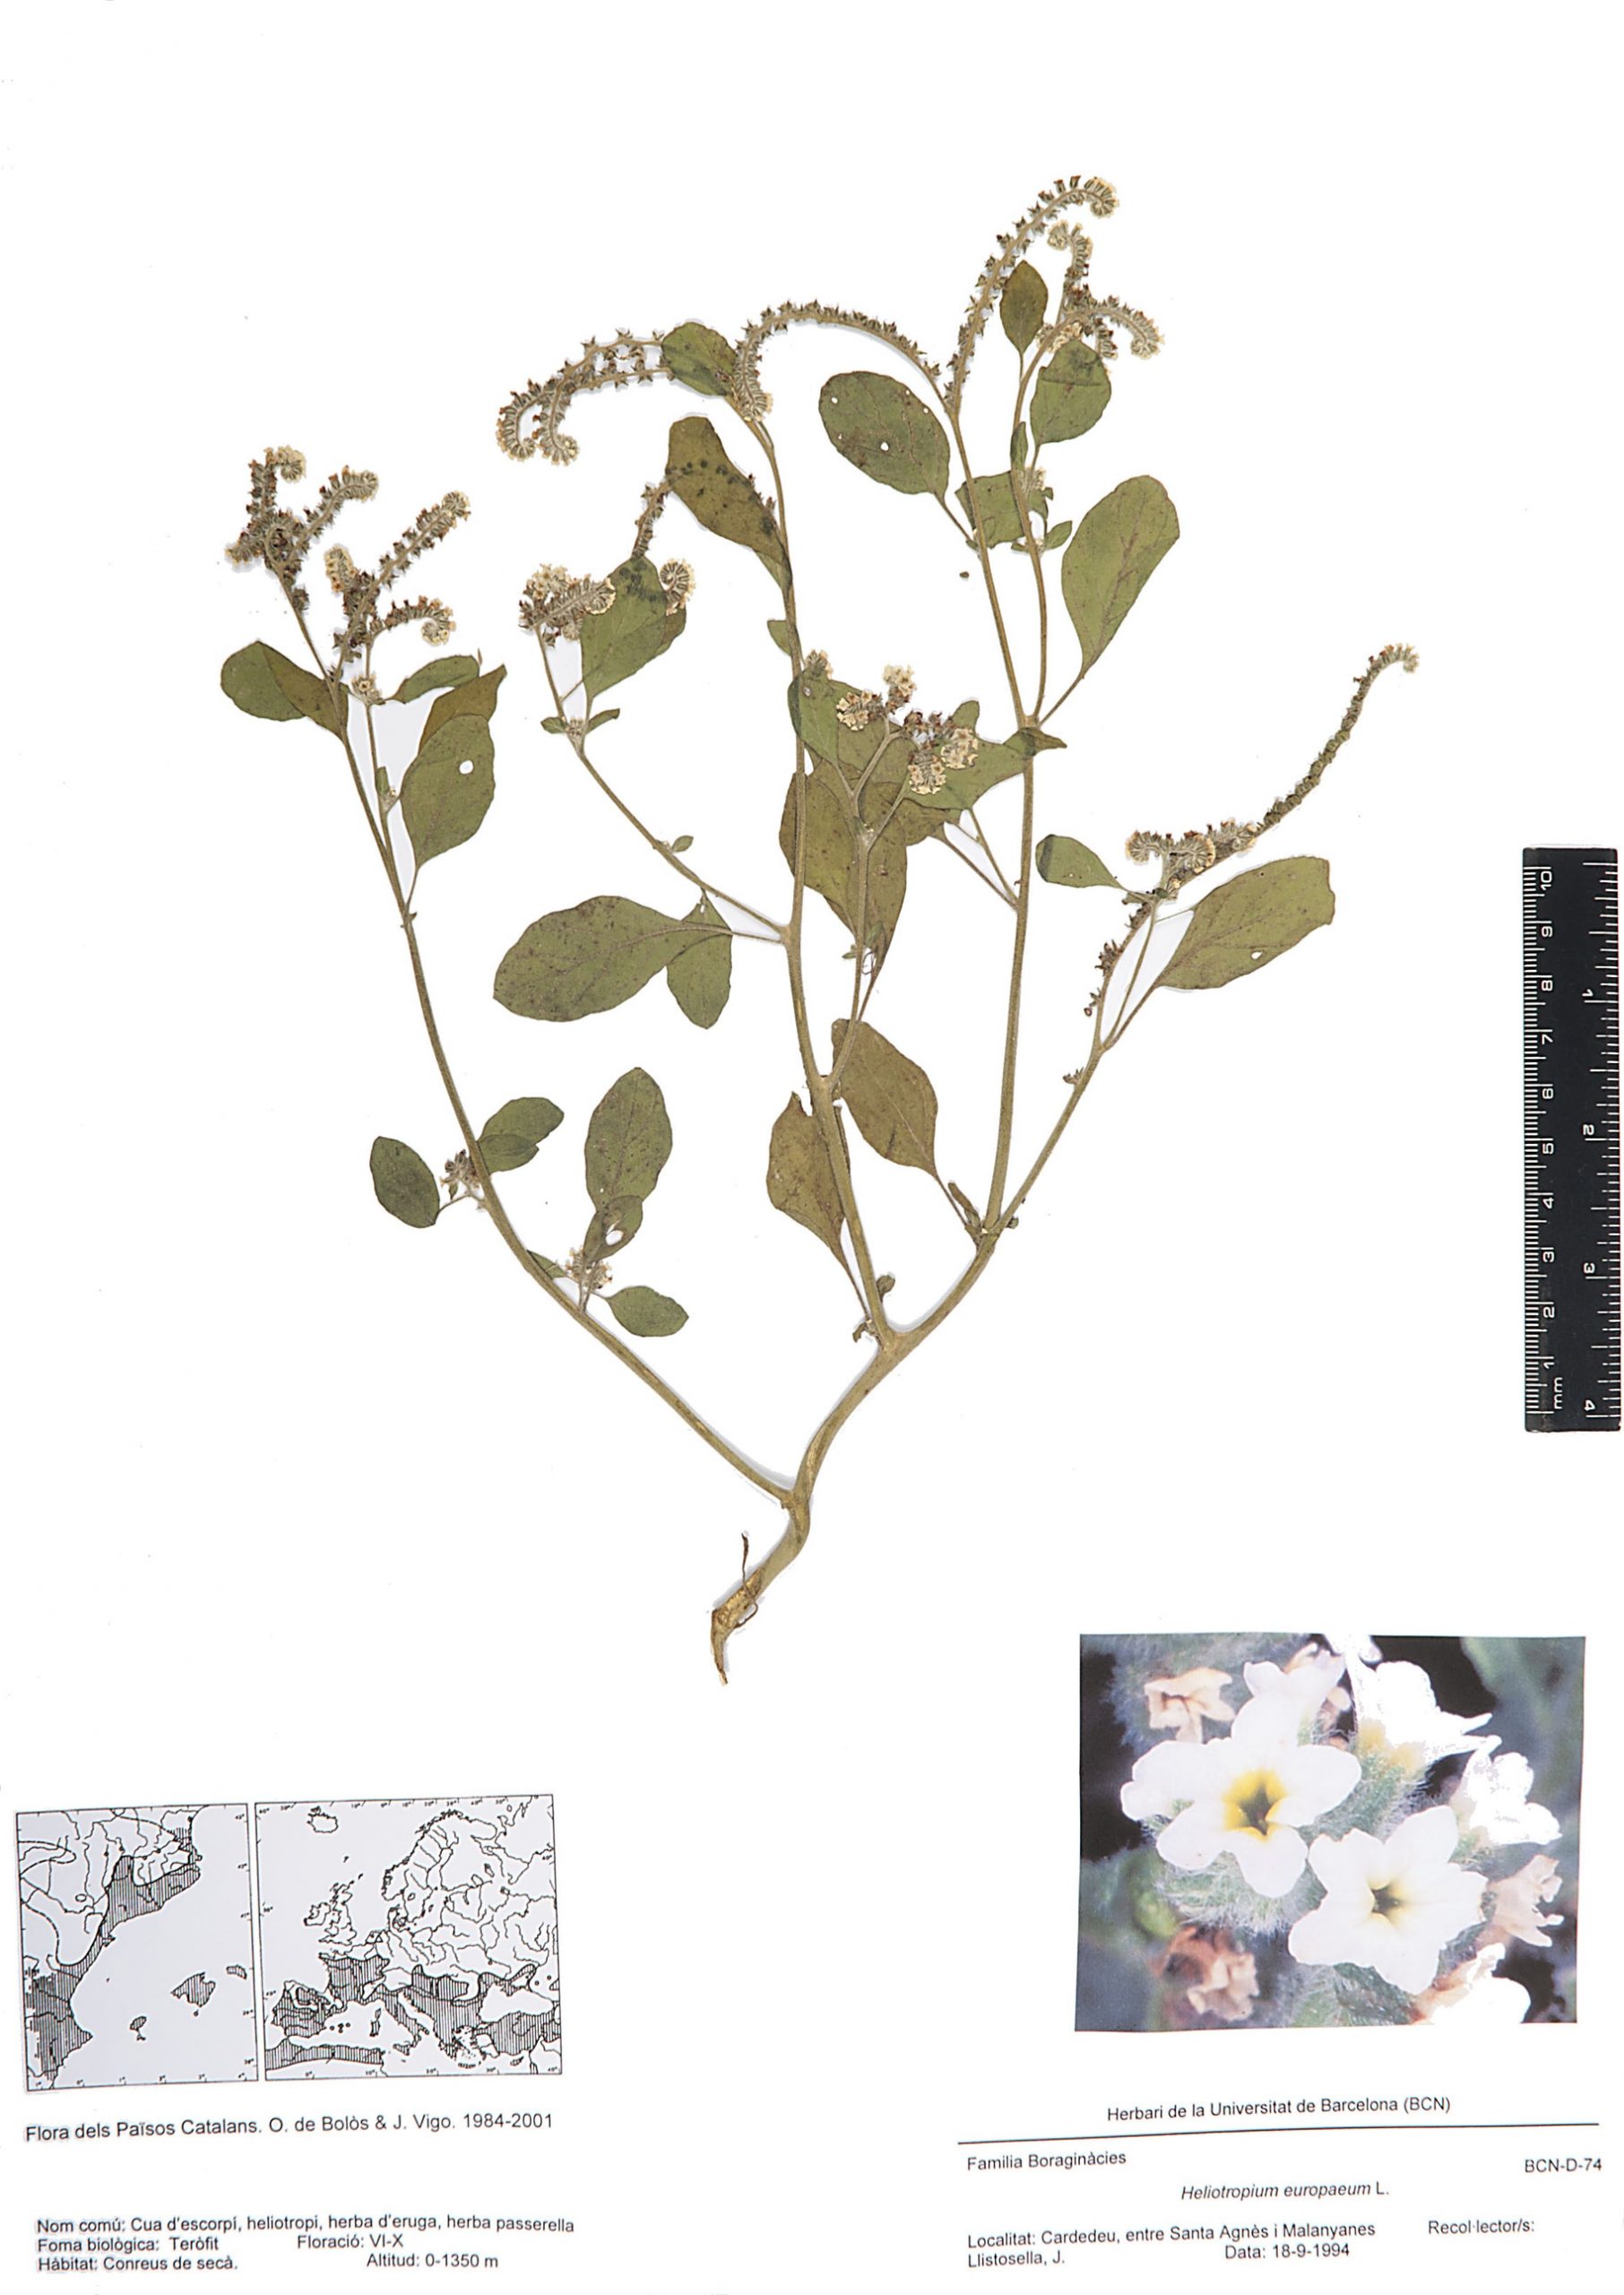 Heliotropium europaeum L. (Cua d’escorpí, heliotropi, herba d’eruga, herba passerella)